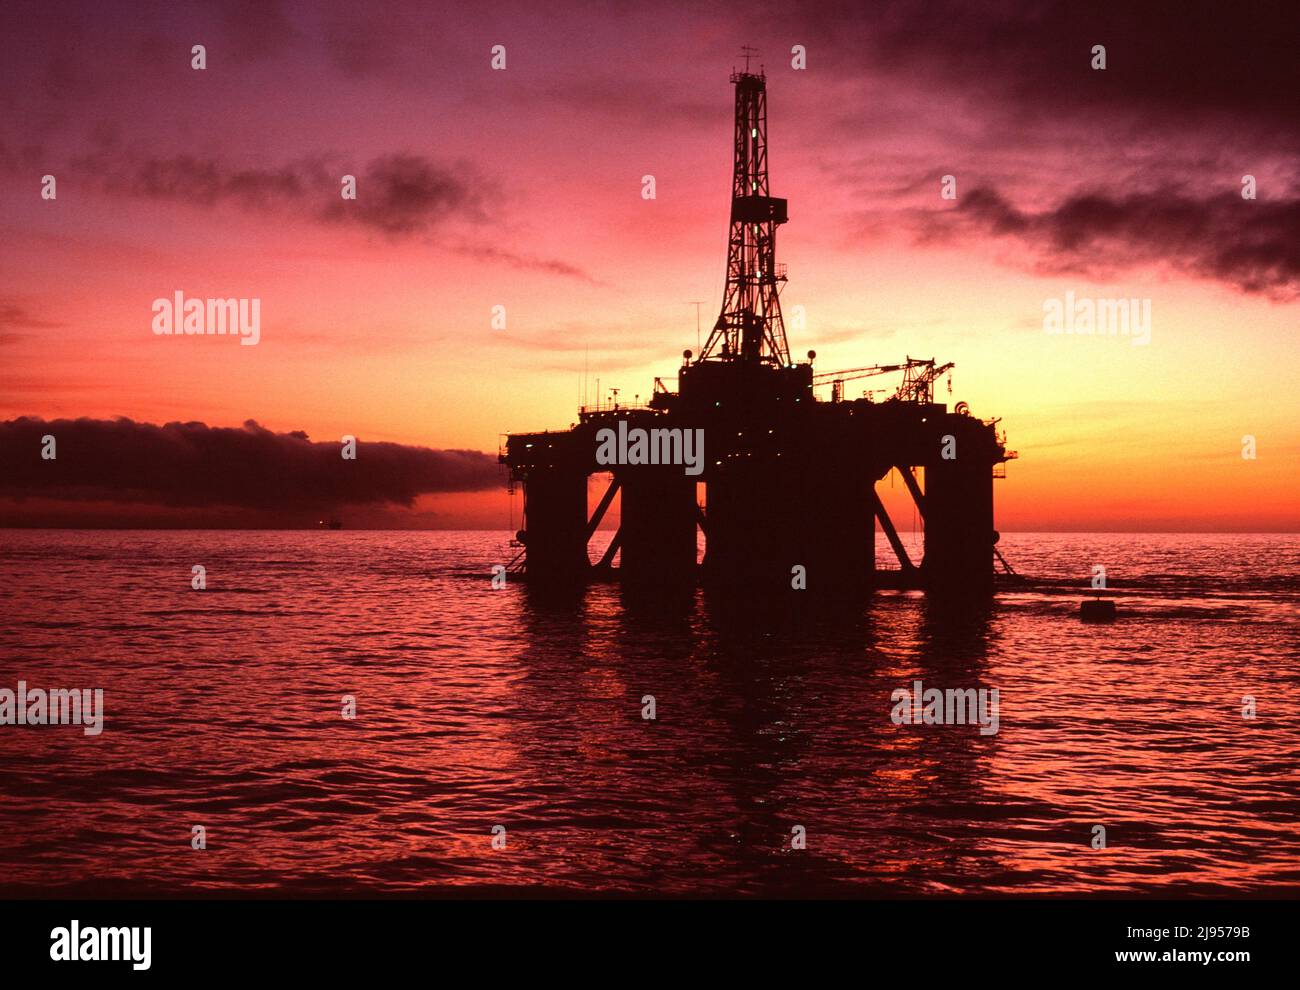 Australia. Industria. Estrecho de Bass. Plataforma petrolífera en alta mar al amanecer. Foto de stock